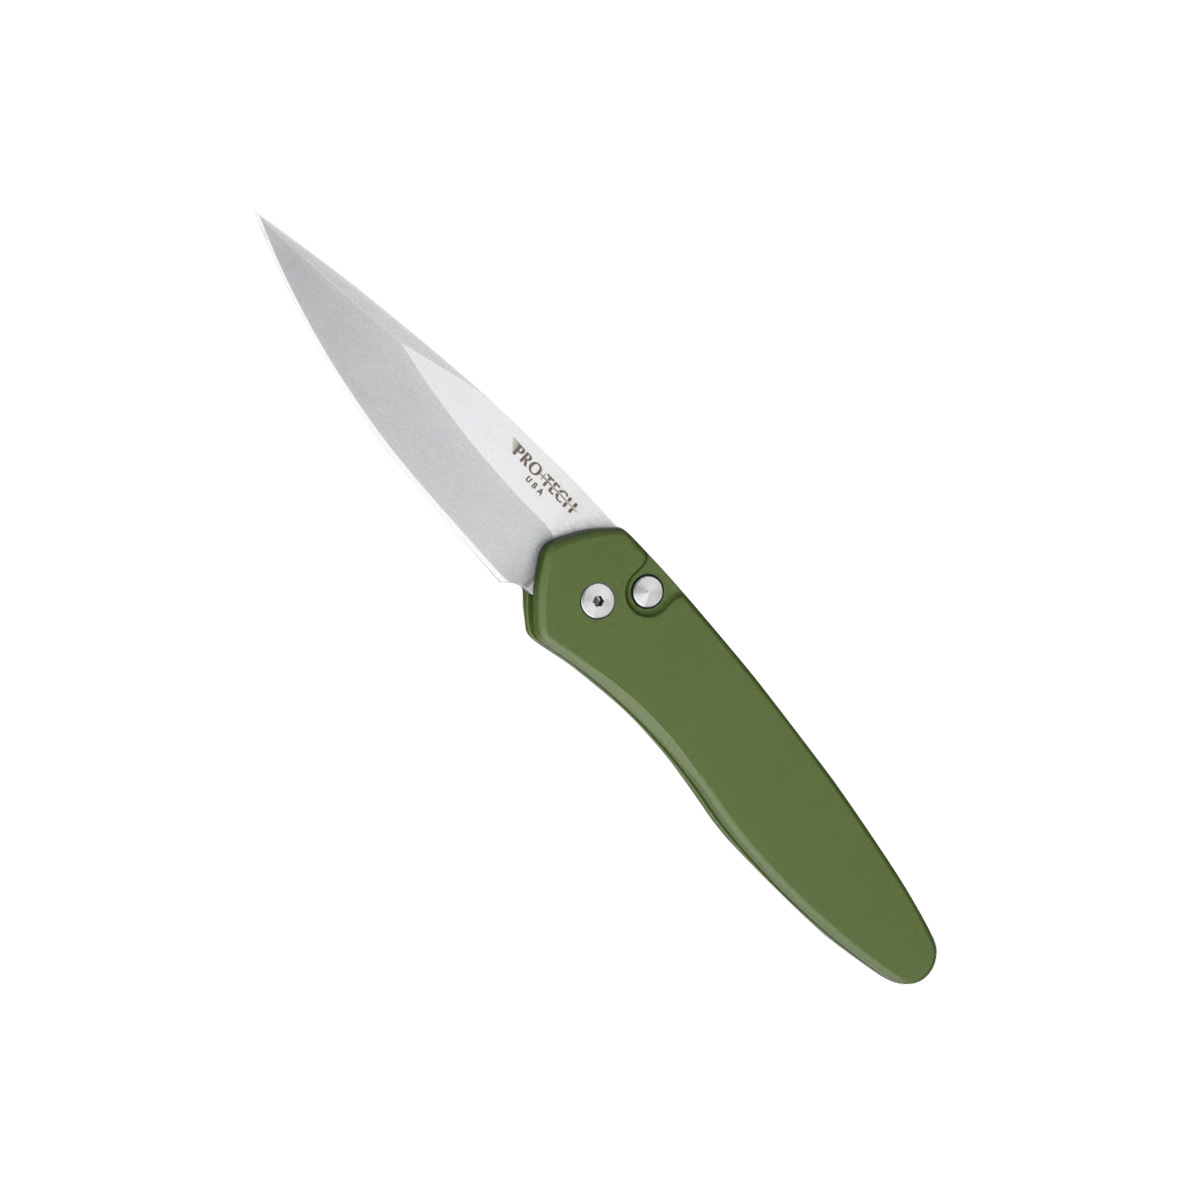 Автоматический складной нож Pro-Tech 3405 – Newport, сталь CPM-S35VN, рукоять зеленый алюминий